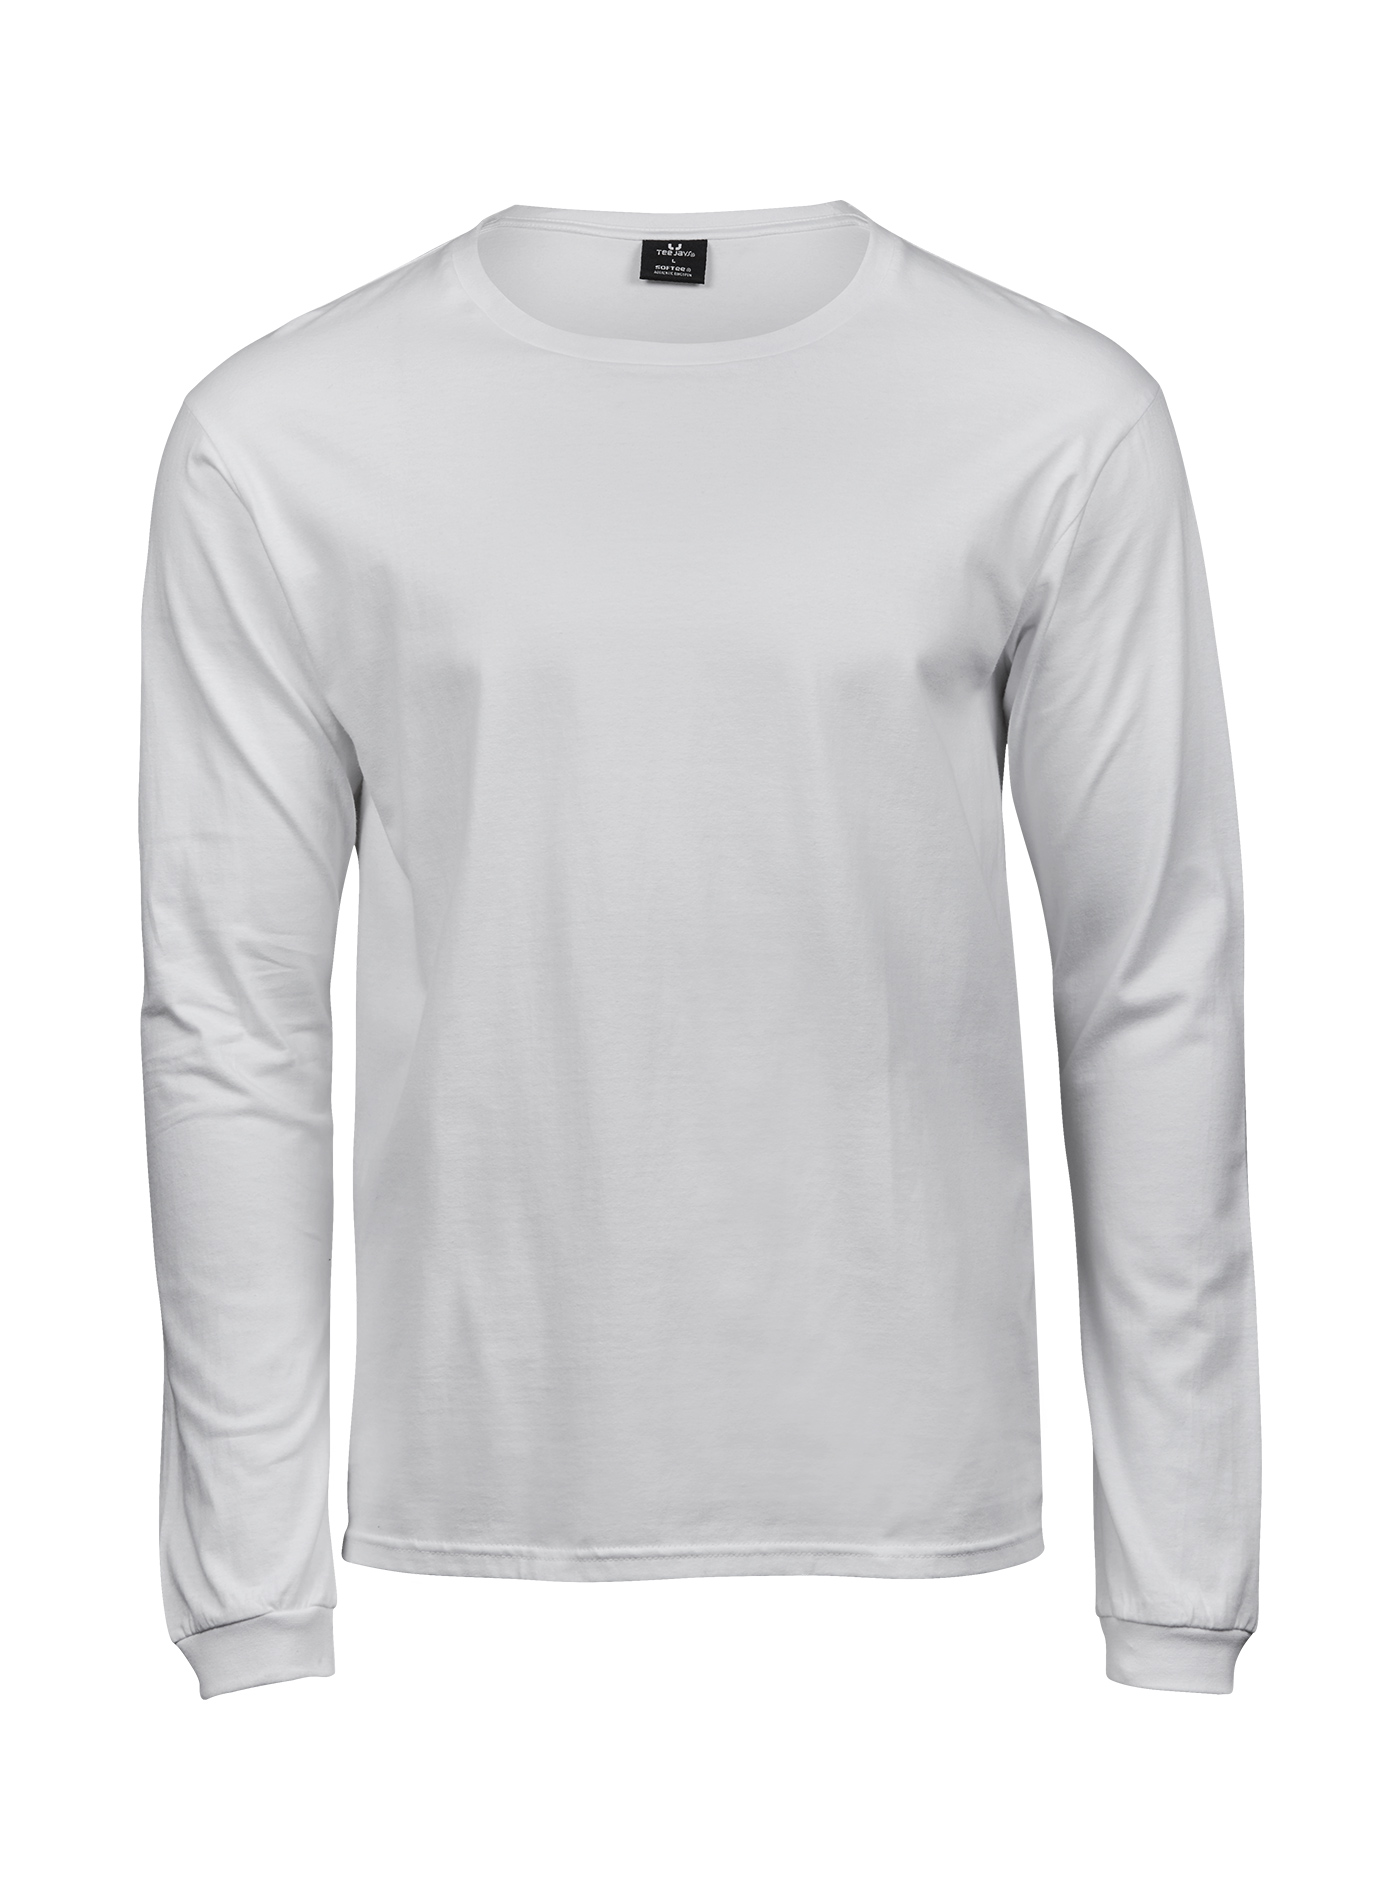 Pánské tričko s dlouhým rukávem Tee Jays Sof-Tee - Bílá XL